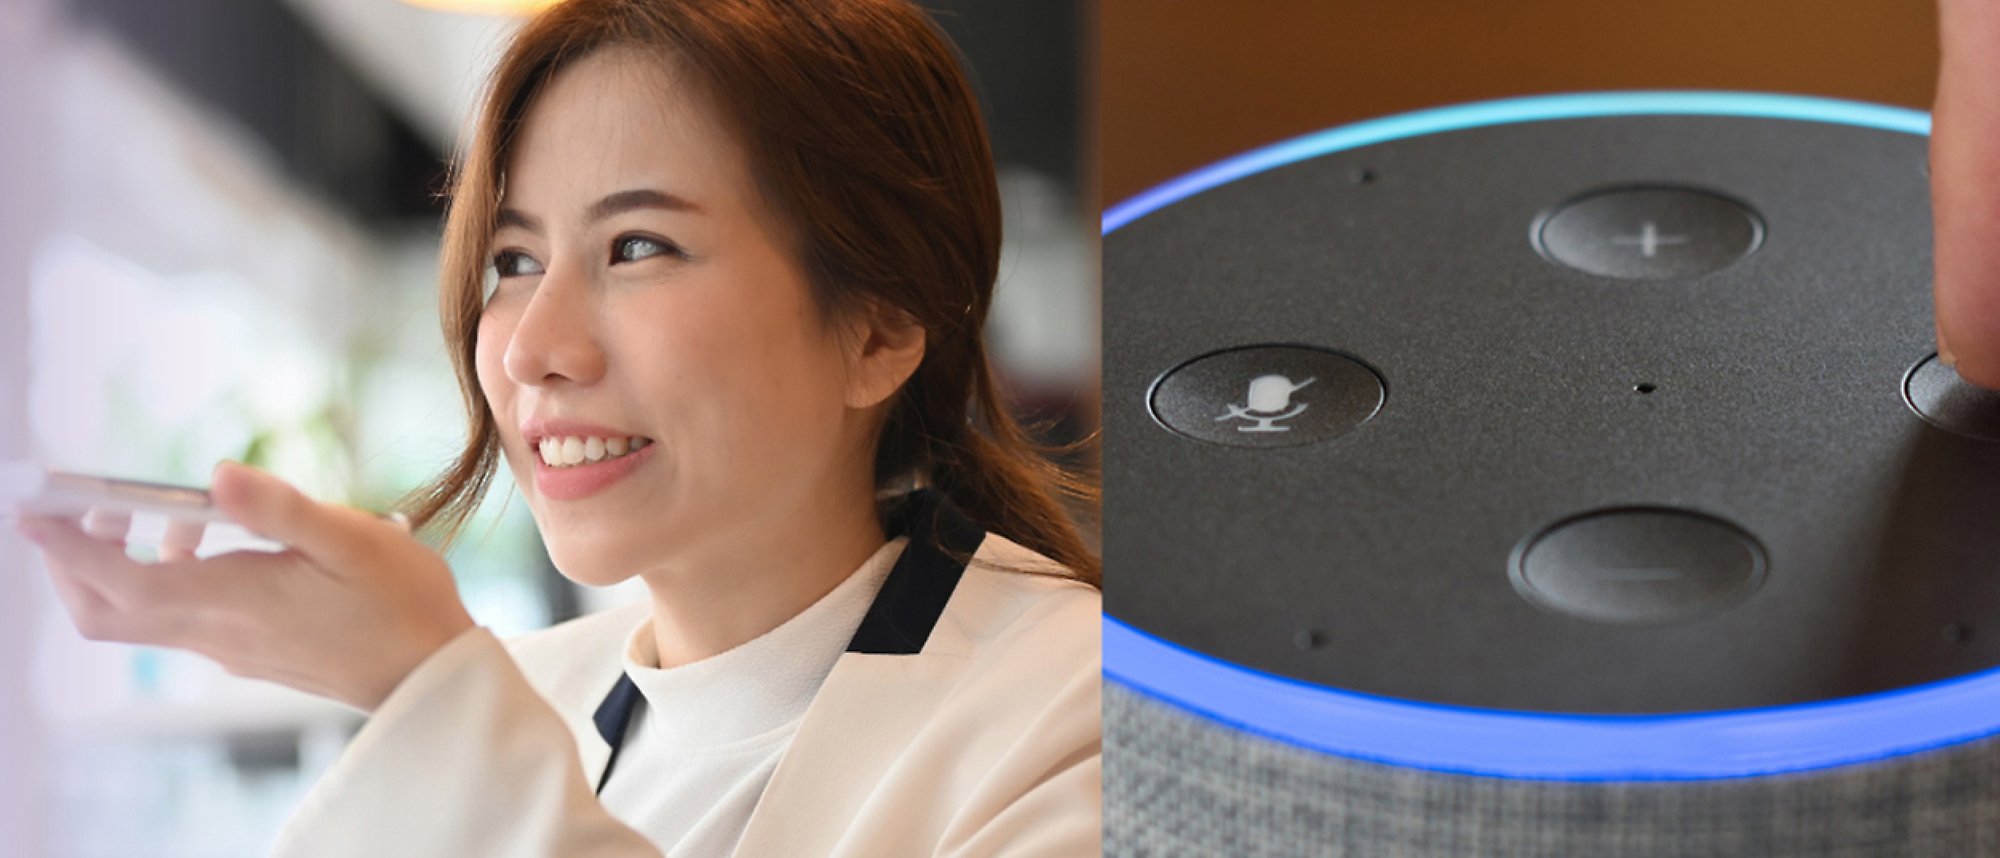 En kvinde, der taler i telefon, og et billede af Amazon Alexa med blåt lys og lydkontrol